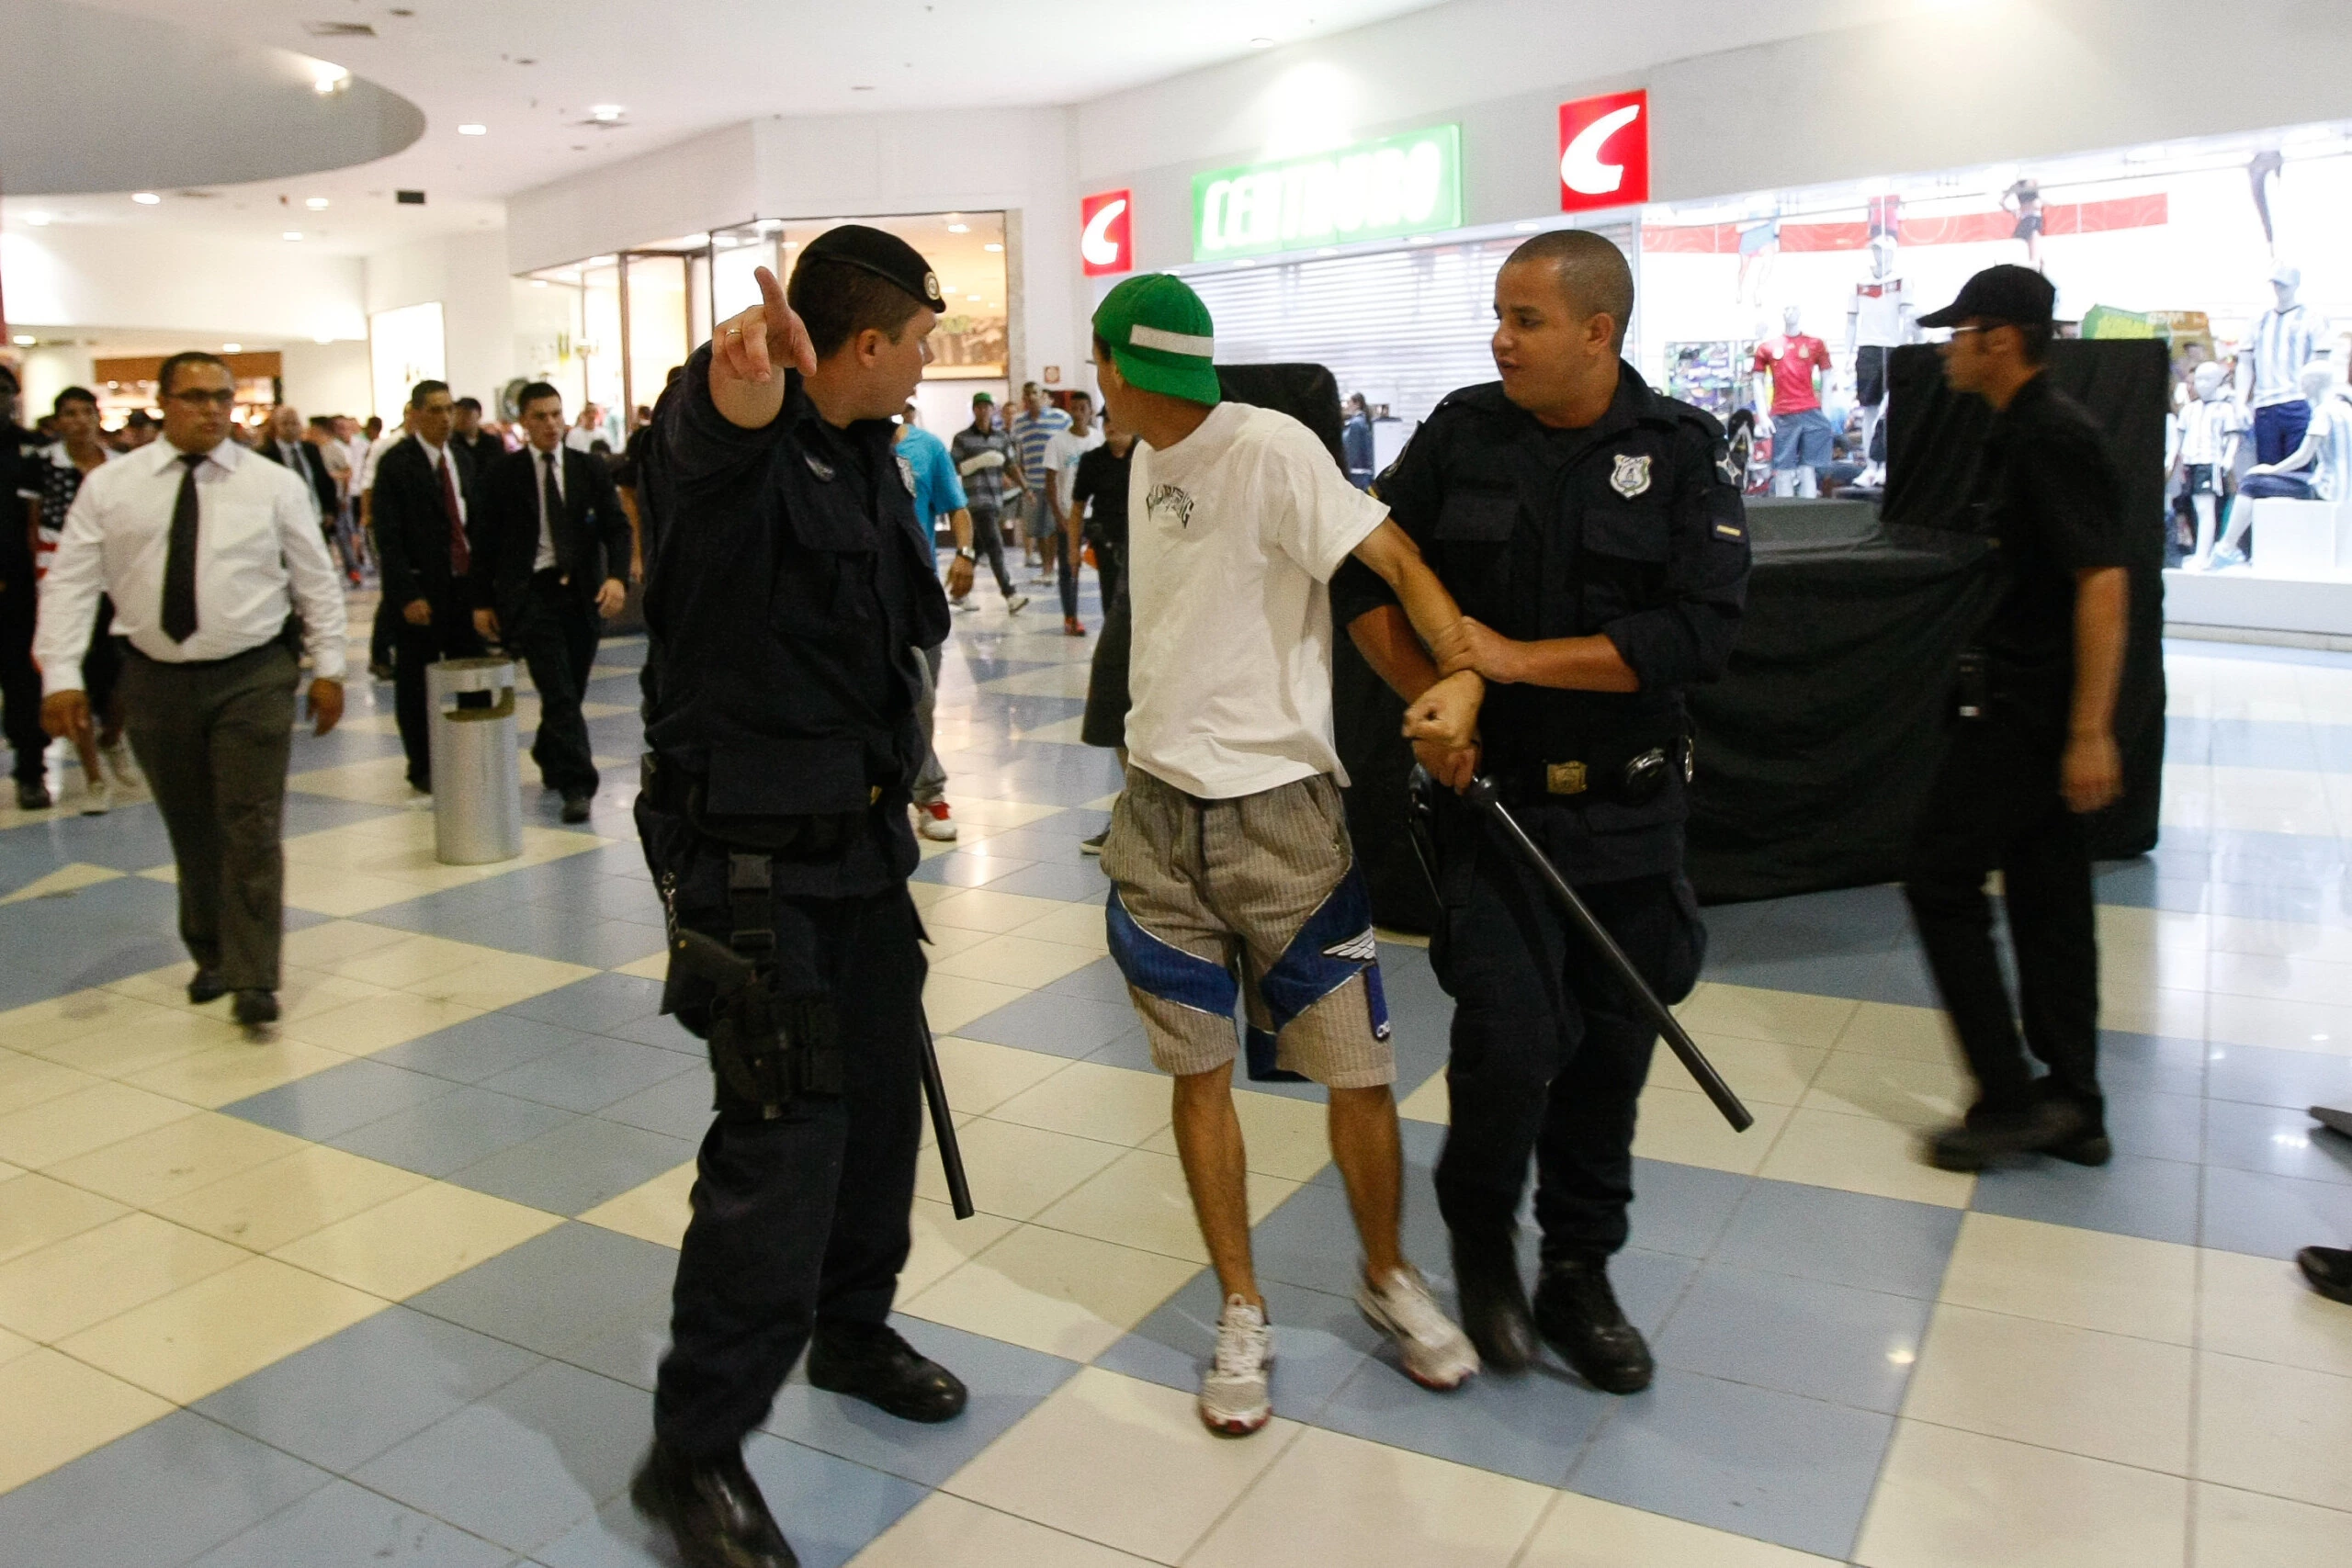 Em 2013, policiais retiram jovem do shopping Internacional de Guarulhos (SP). Após lojistas acionarem a polícia com denúncias de roubo, a PM prendeu 15 menores. Foto: Robson Ventura/Folhapress.